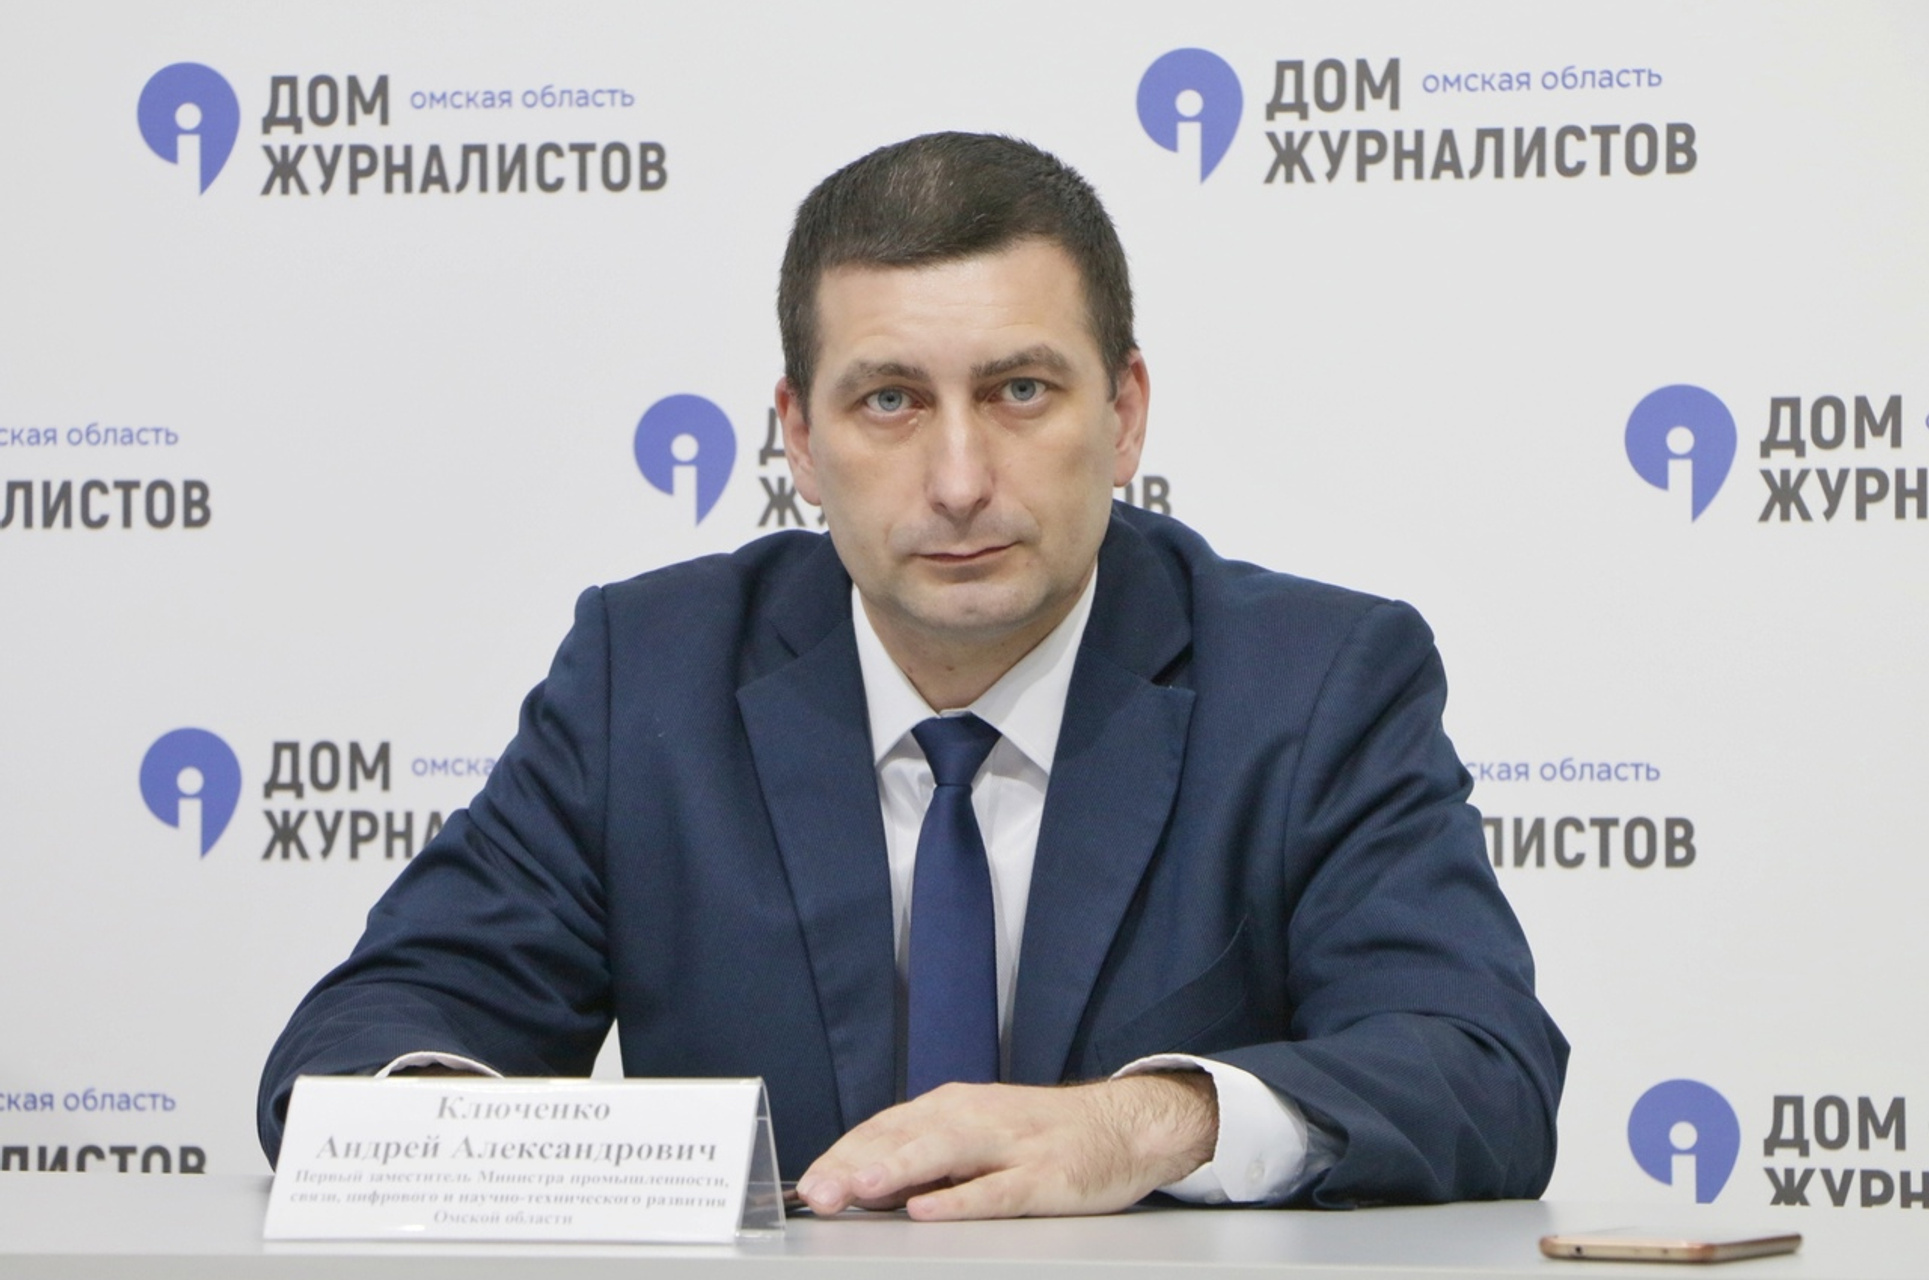 Андрея Ключенко отправили в отставку из-за неудовлетворительных результатов в работе